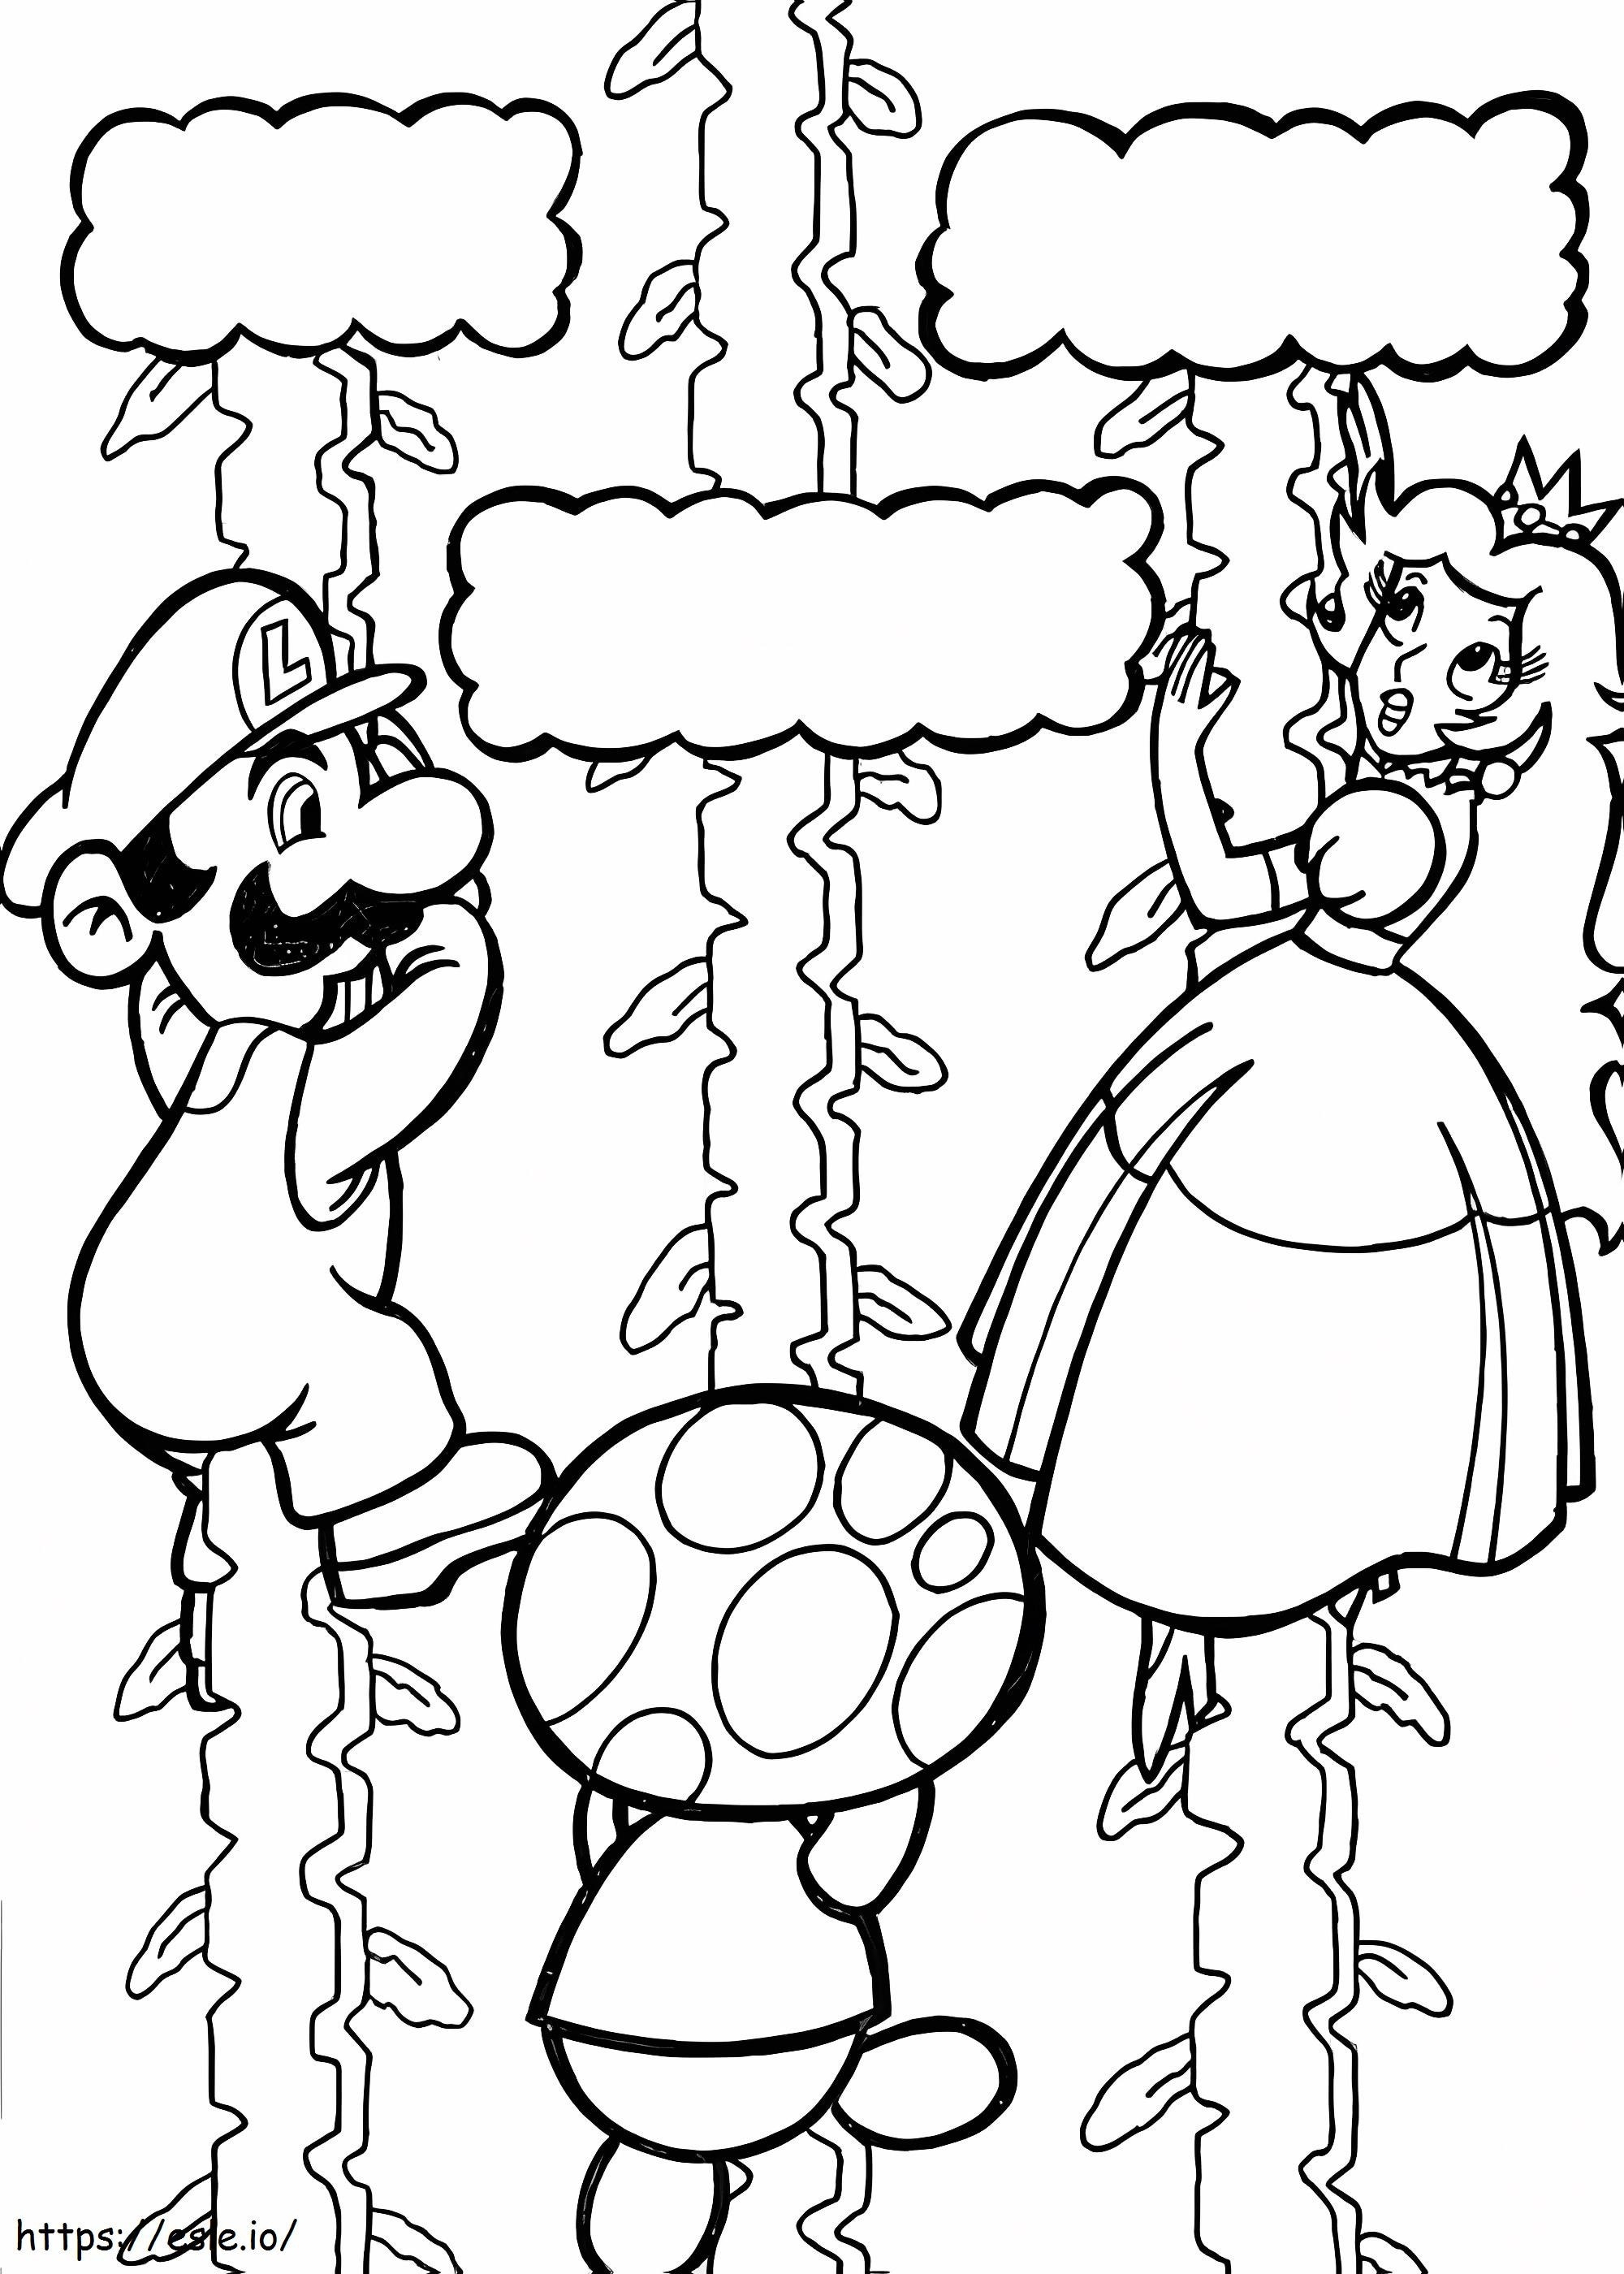 Mario redt de prinses kleurplaat kleurplaat